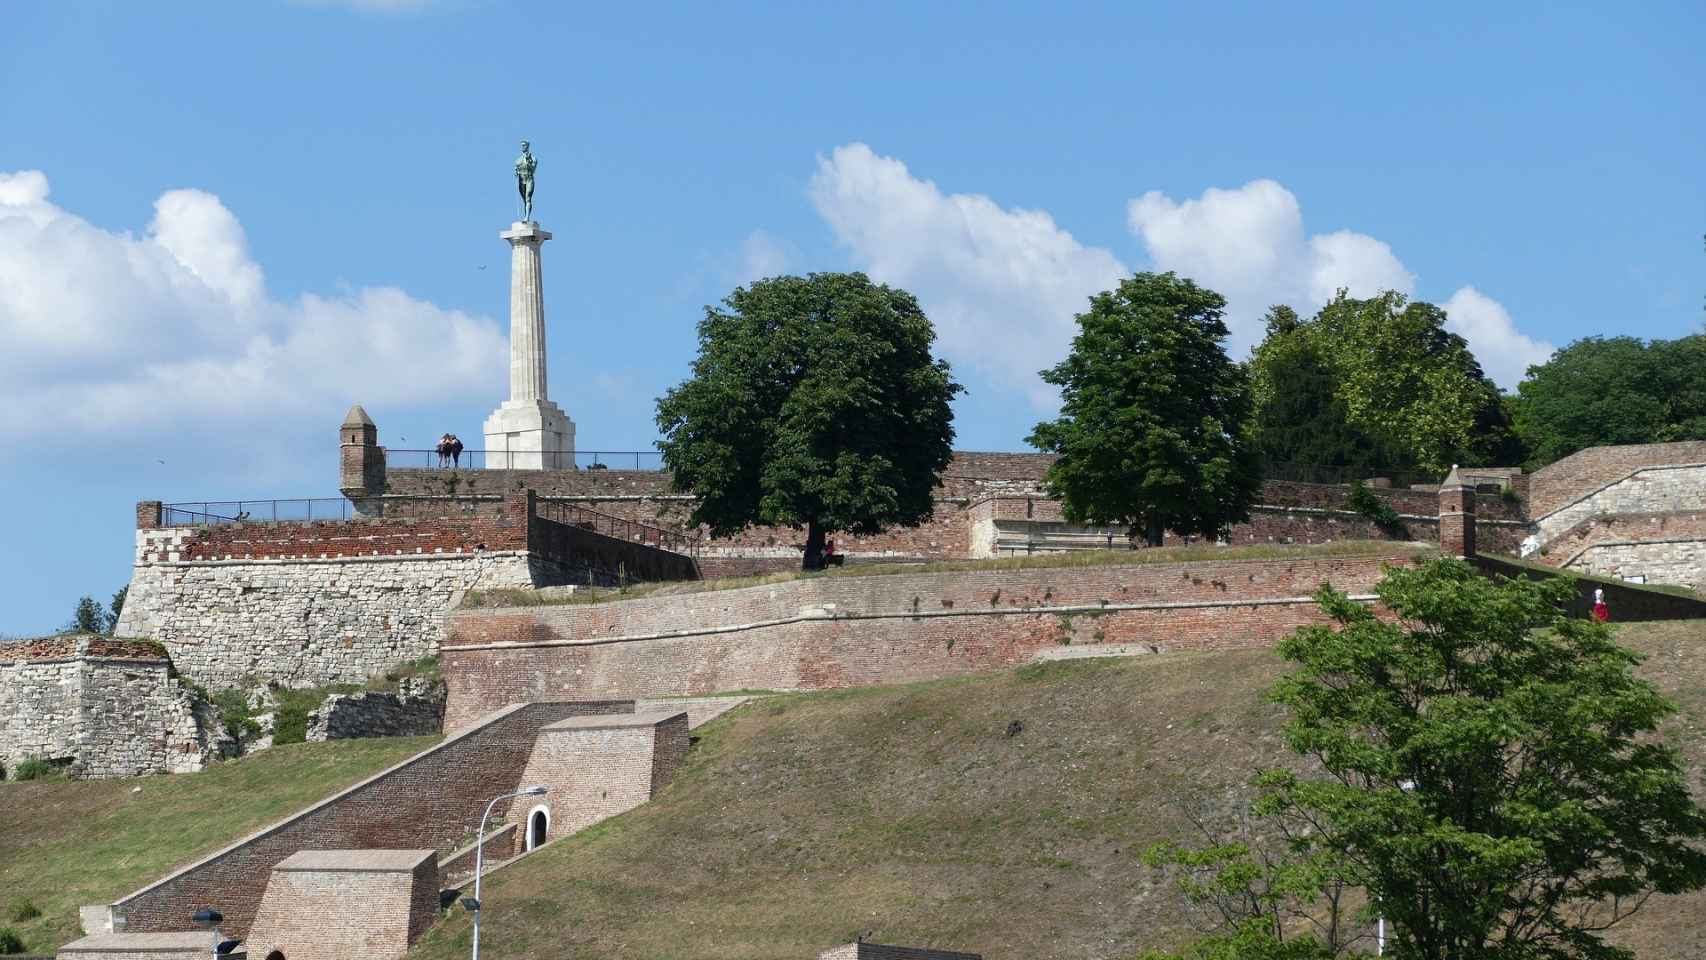 La fortaleza de Kalemegdan, desde donde se divisa el transcurso de los ríos Sava y Danubio.